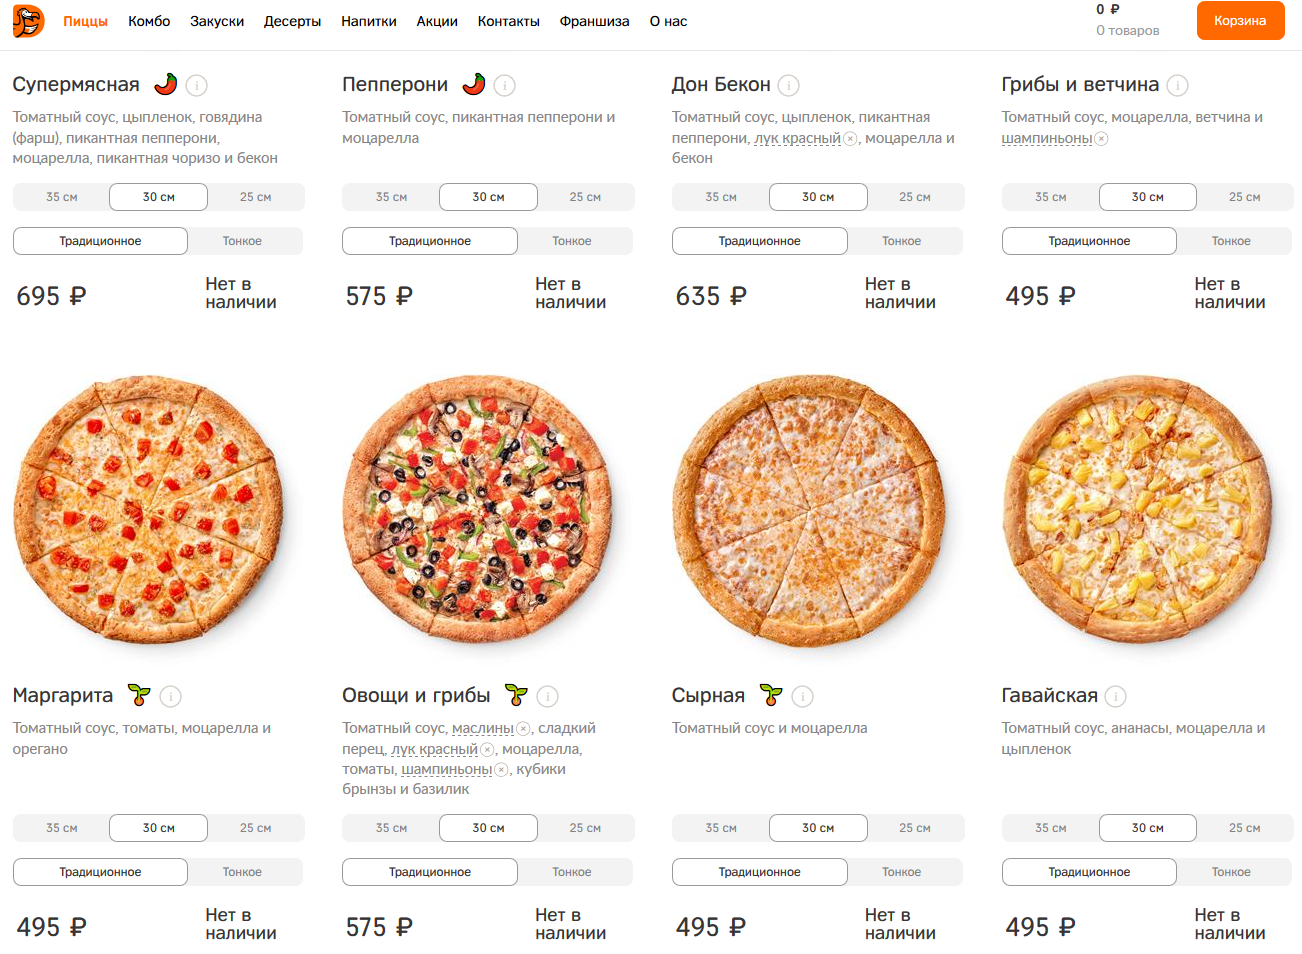 сколько калорий в куске пиццы четыре сыра фото 76